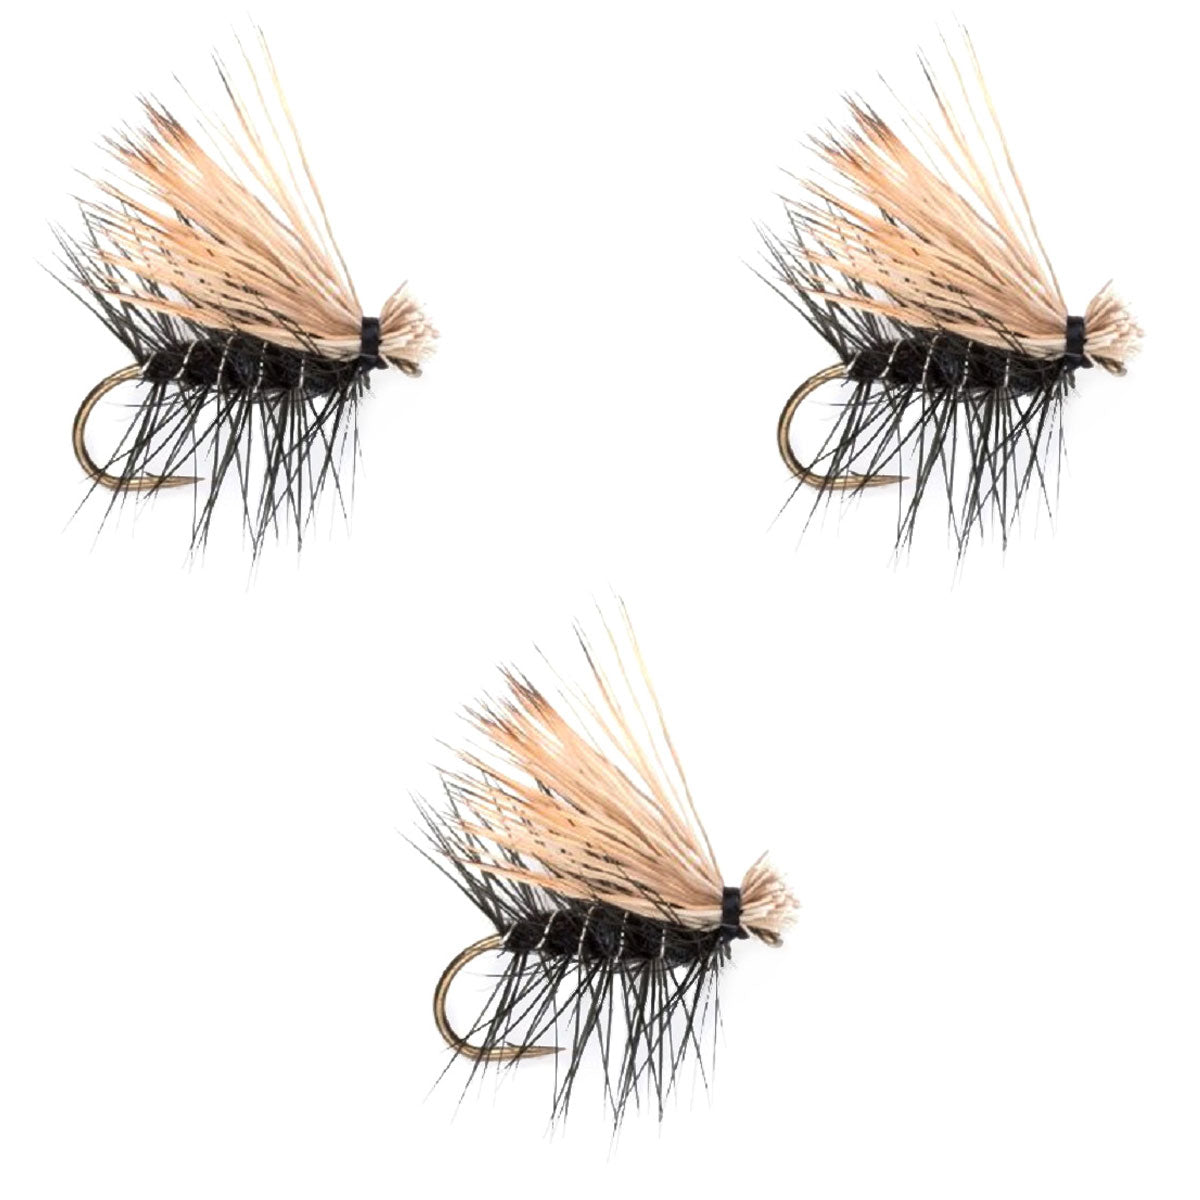 3 Pack Black Elk Hair Caddis Classic Trout Dry Flies Size 18